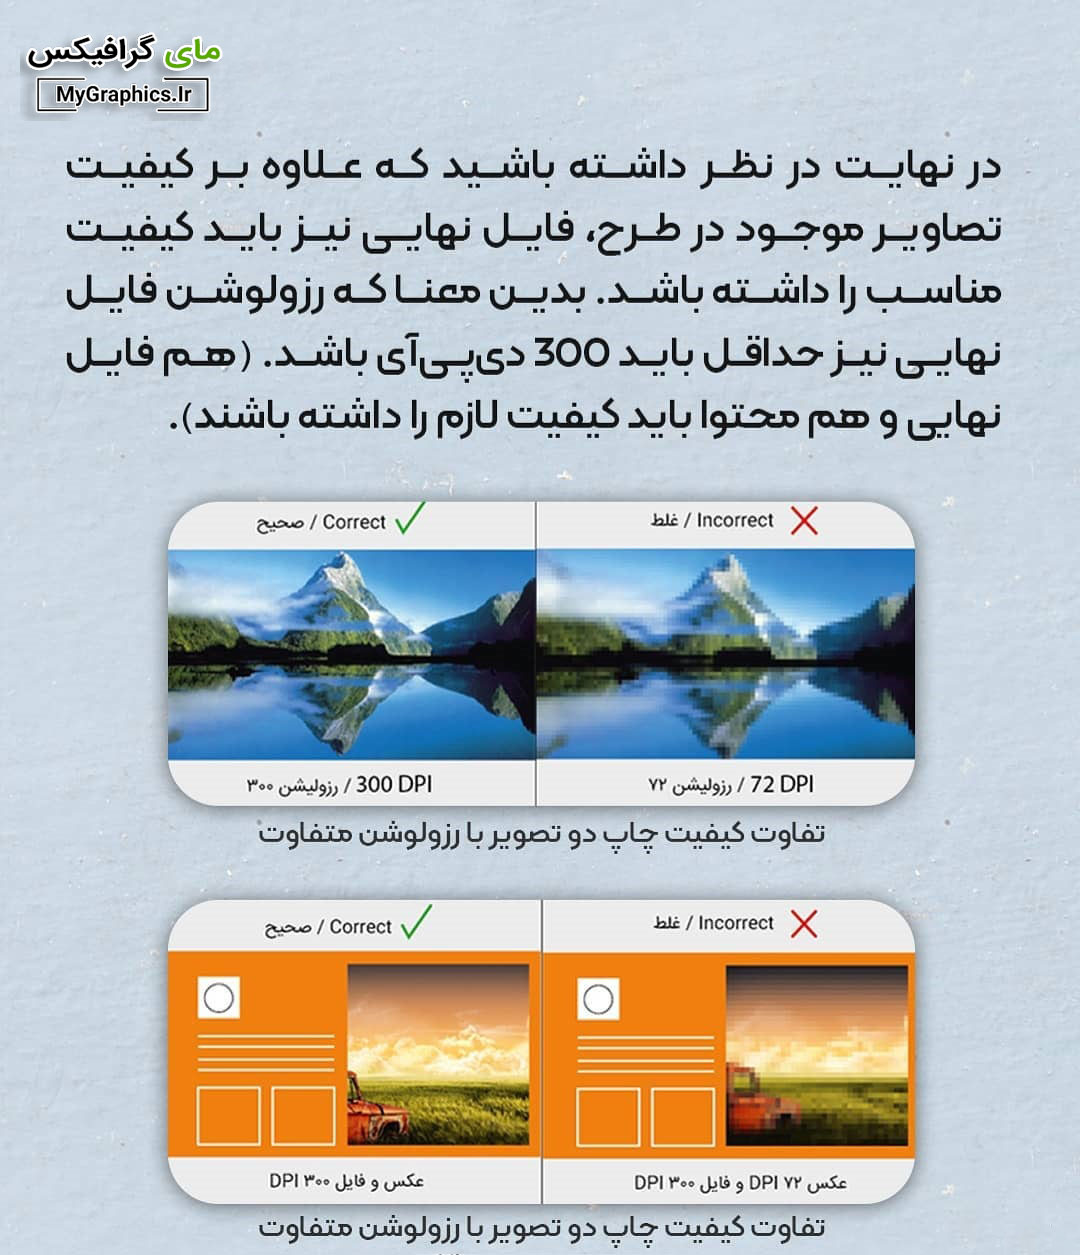 انتخاب تصاویر و فایل با کیفیت و رزولوشن مناسب در طراحی